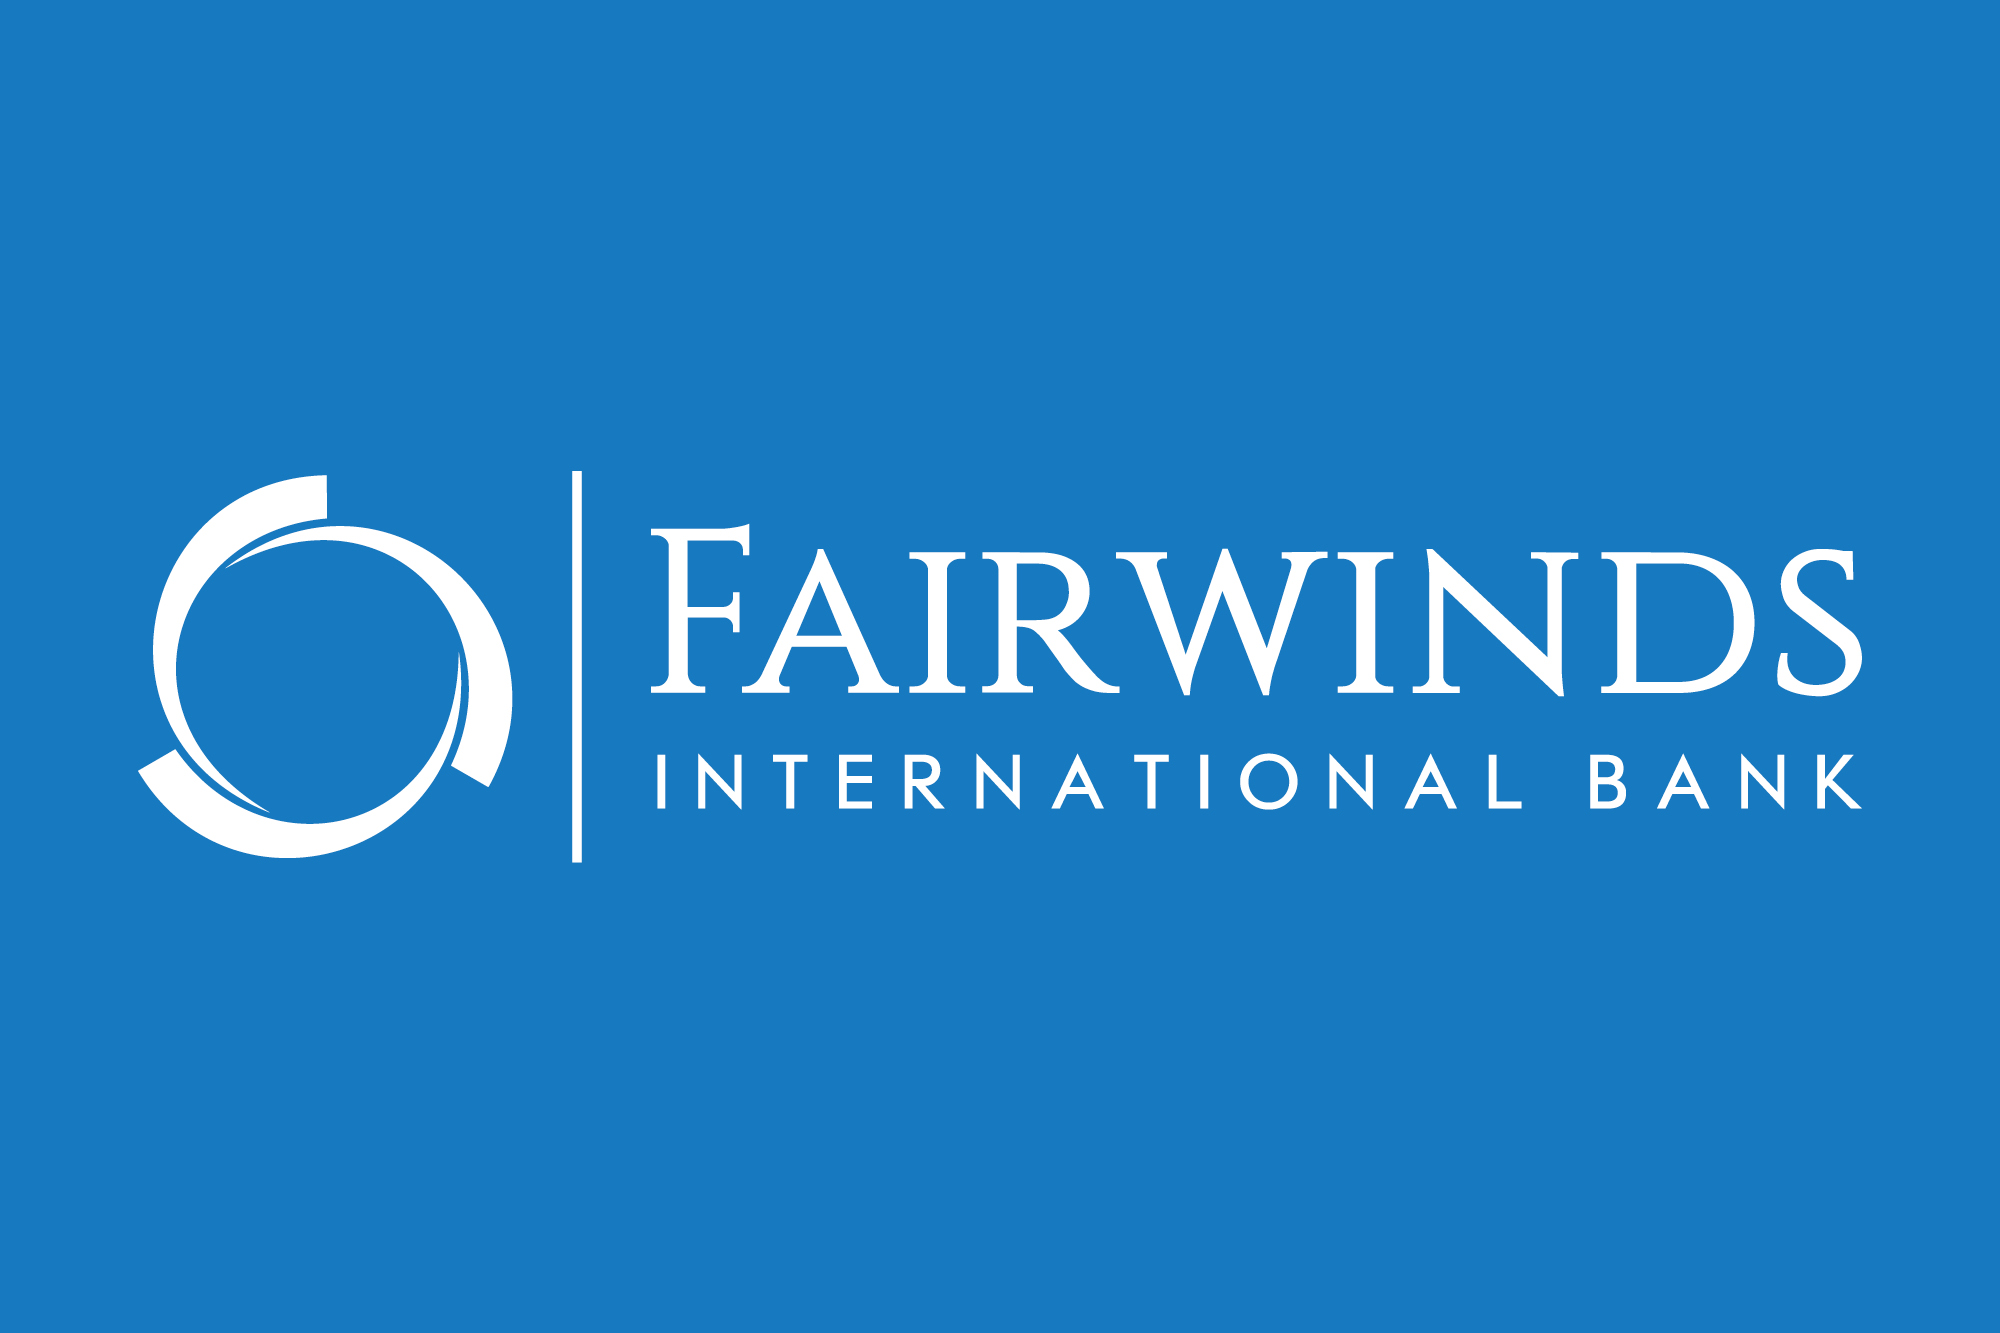 Fairwinds International Bank LLC